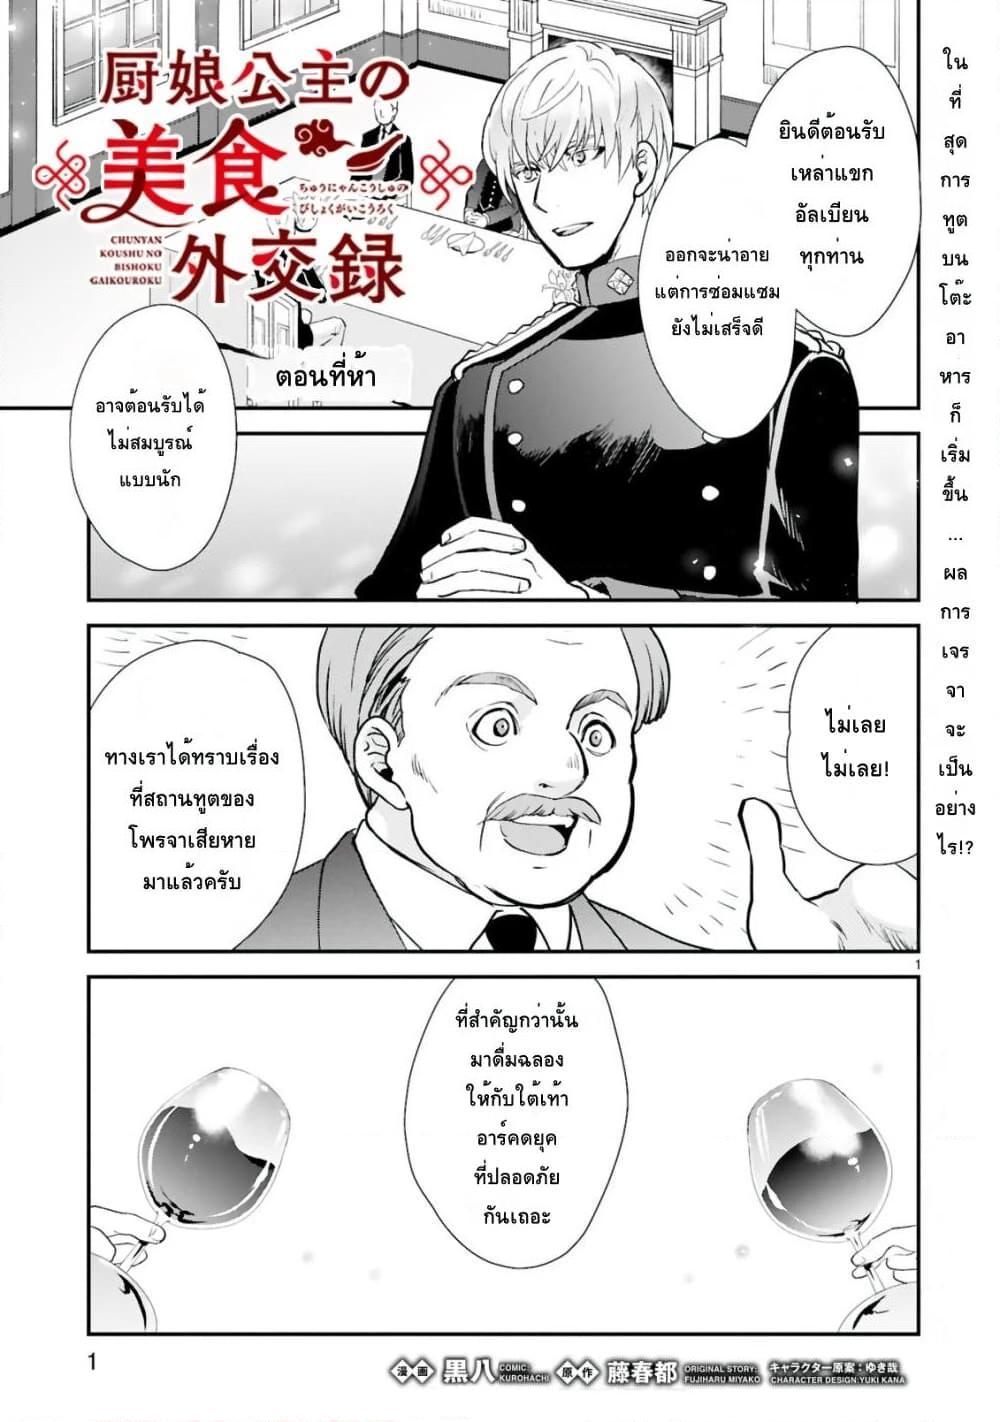 อ่านการ์ตูน Chunyan Koushu no Bishoku Gaikouroku 5.1 ภาพที่ 1